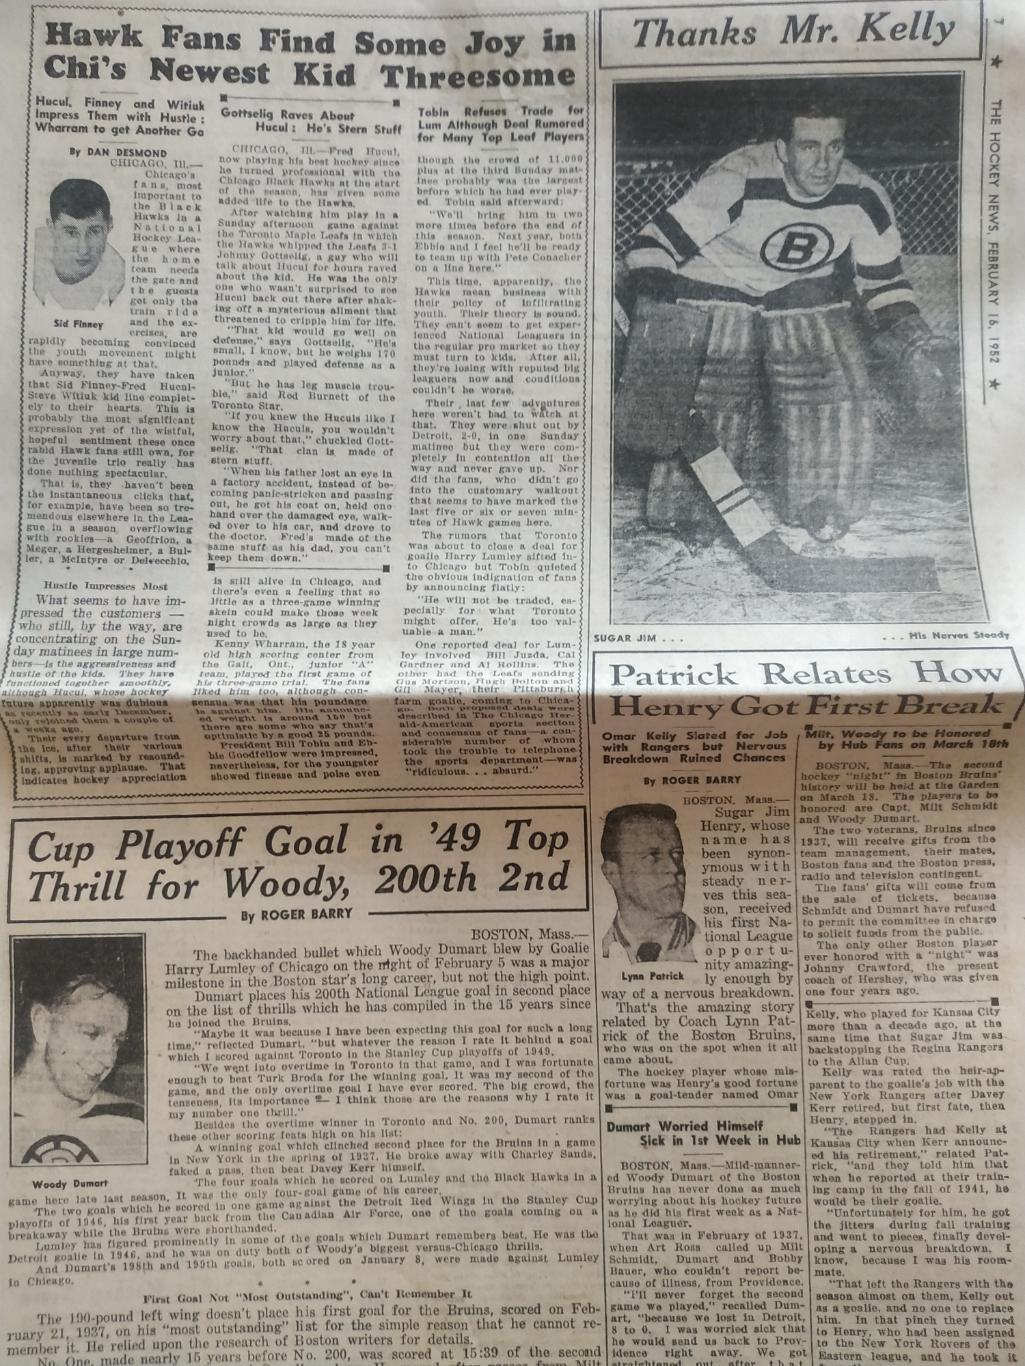 ХОККЕЙ ЖУРНАЛ ЕЖЕНЕДЕЛЬНИК НХЛ НОВОСТИ ХОККЕЯ FEB.16 1952 NHL THE HOCKEY NEWS 2